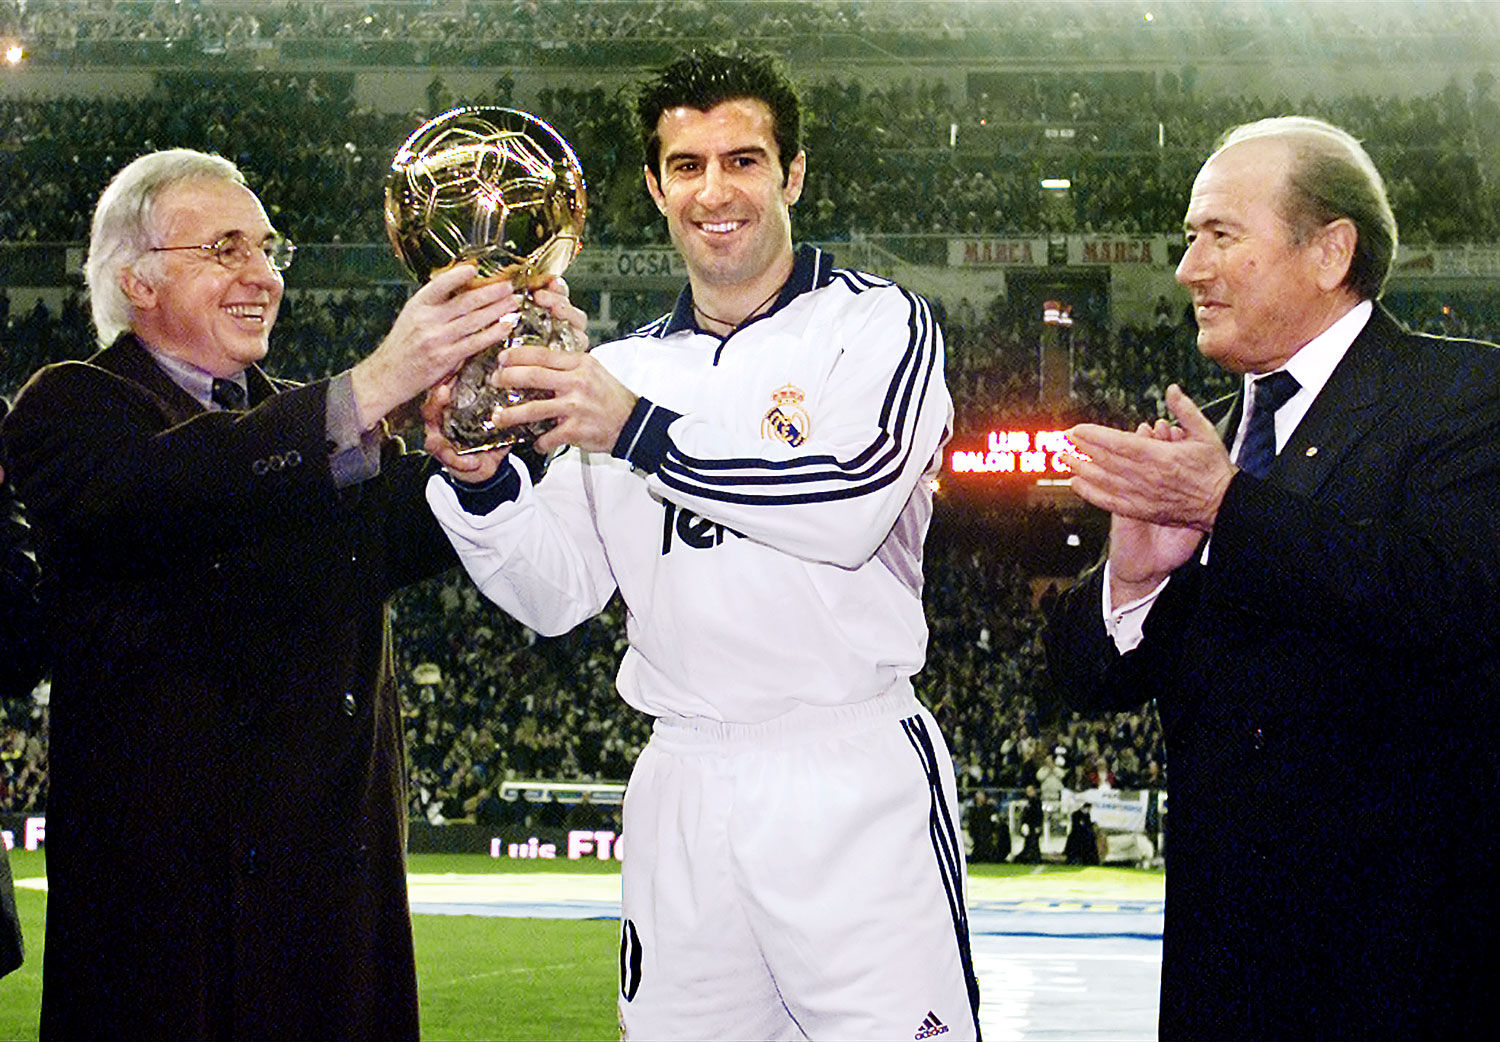 Blatter 2001-ben tapsolt a Bernabeu stadionban Figónak az előző évben elnyert Aranylabdához